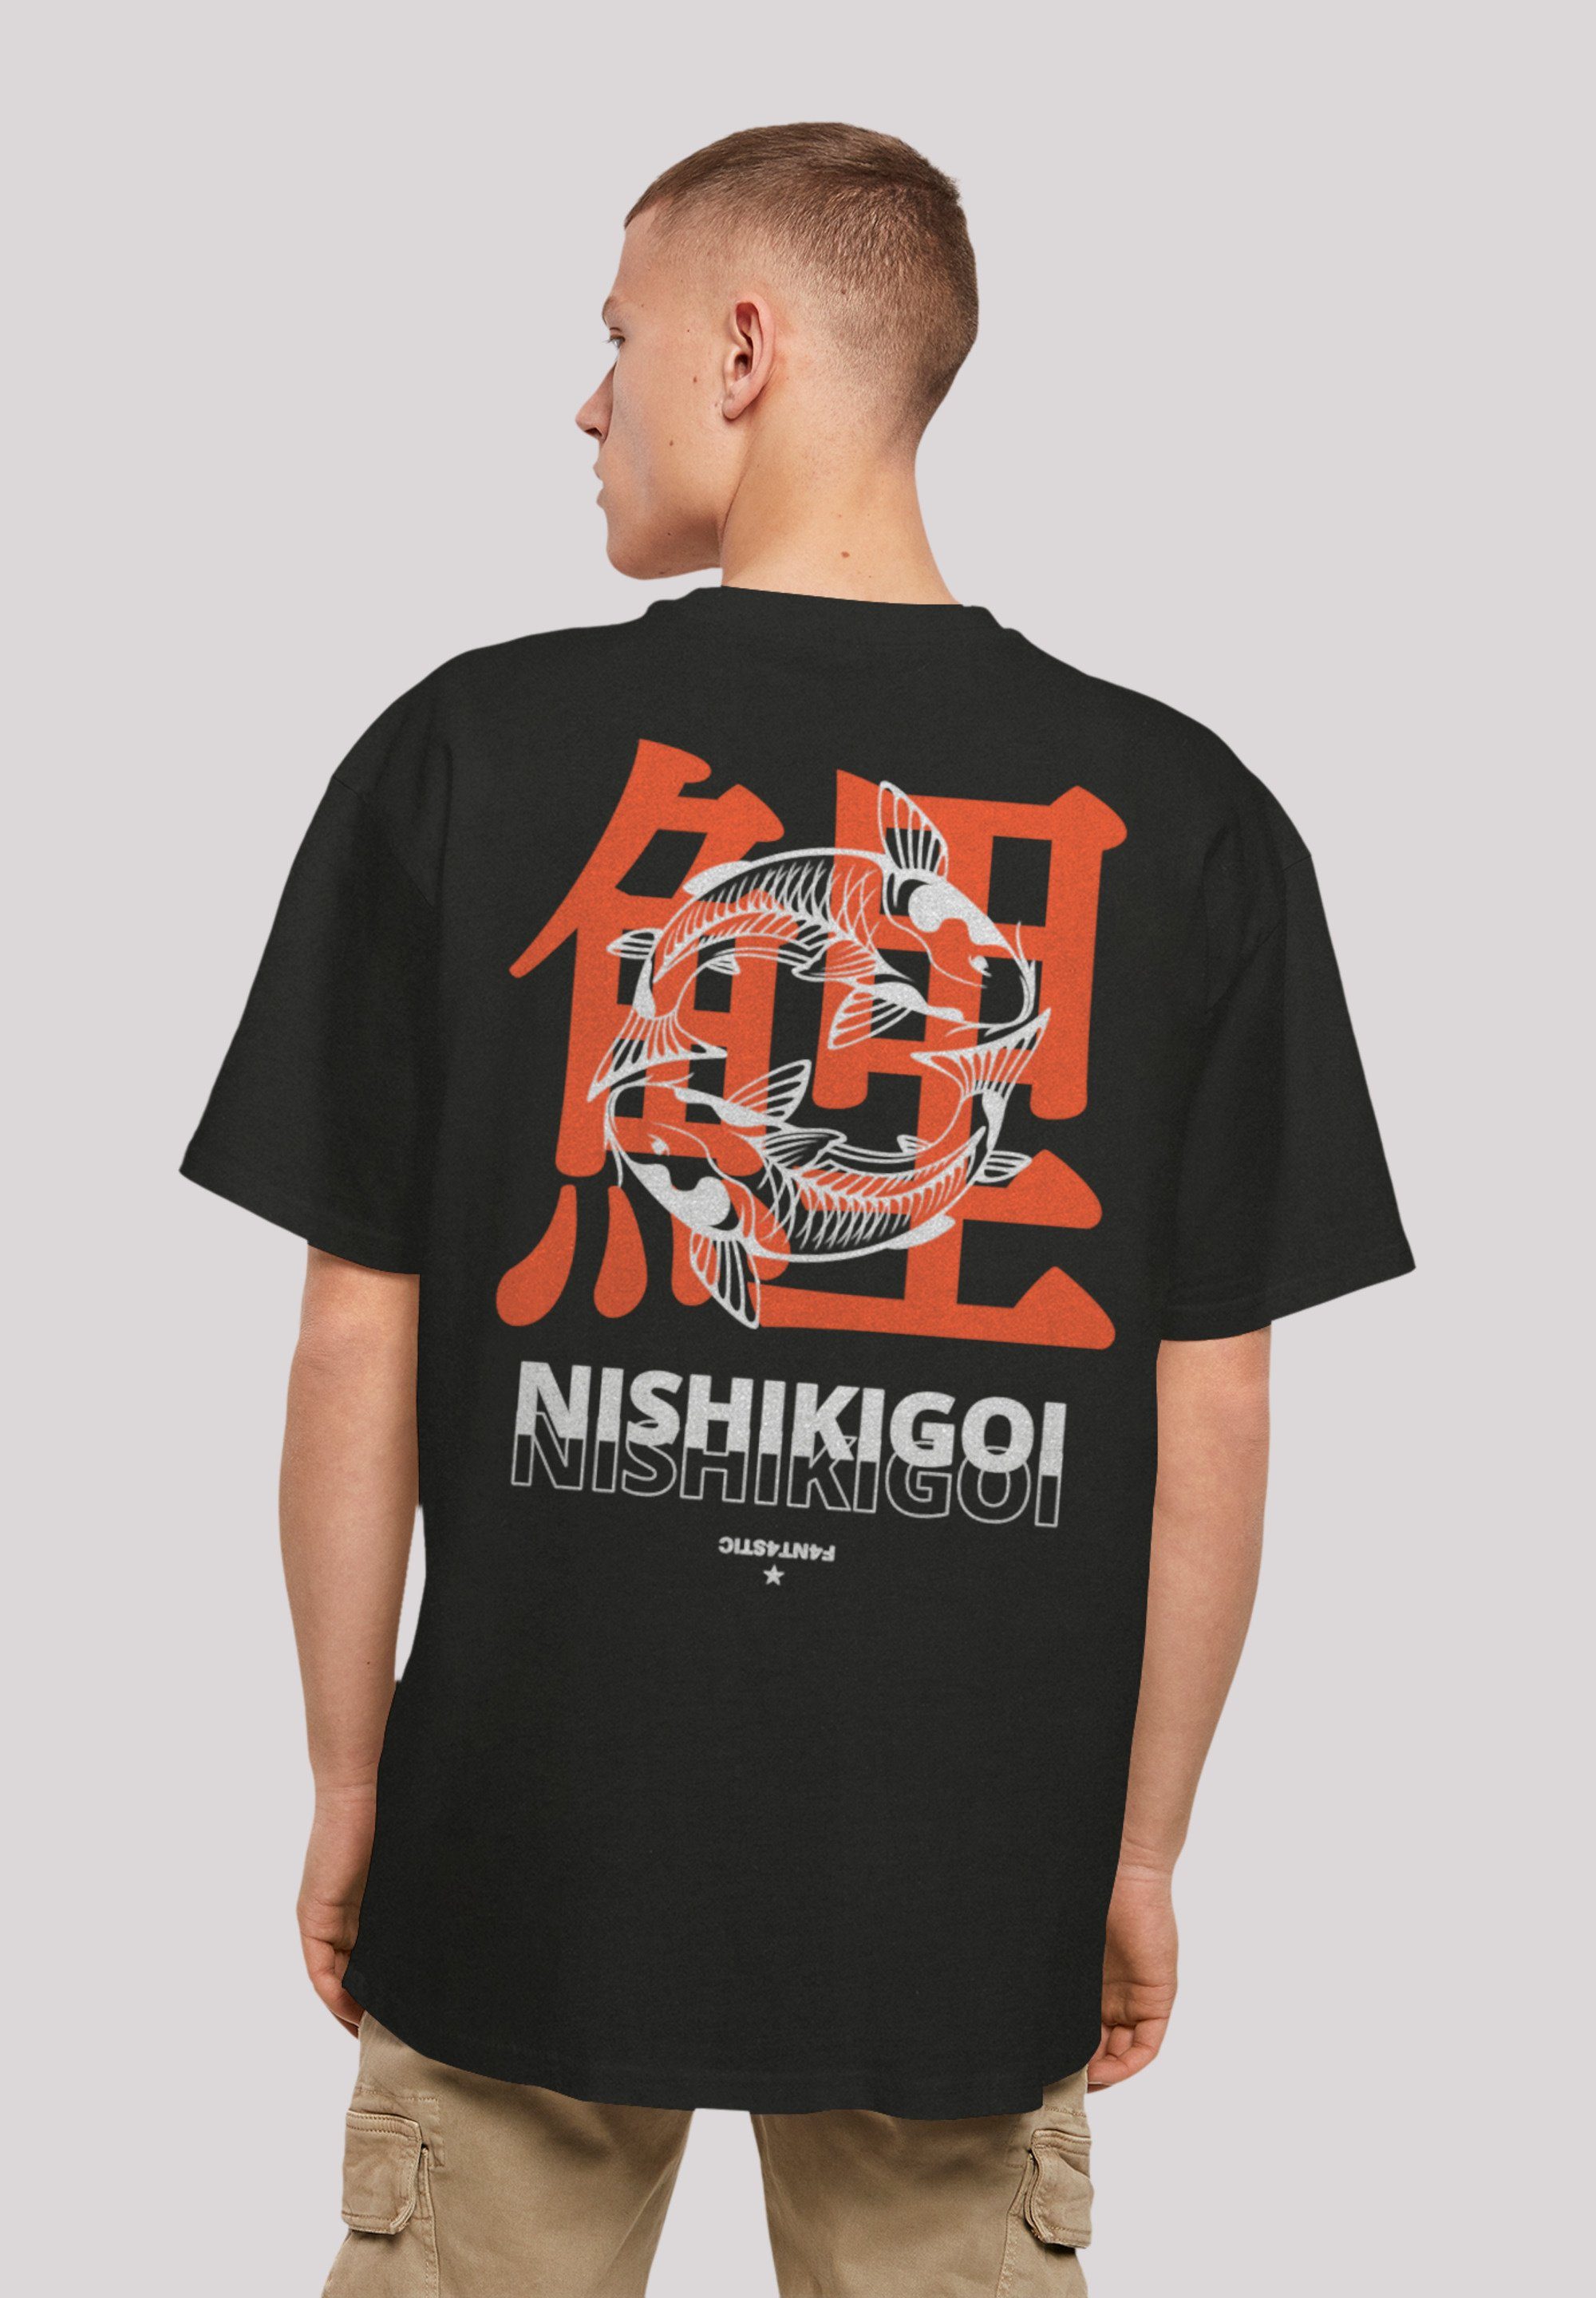 schwarz T-Shirt Japan Grafik Print F4NT4STIC Koi Nishikigoi